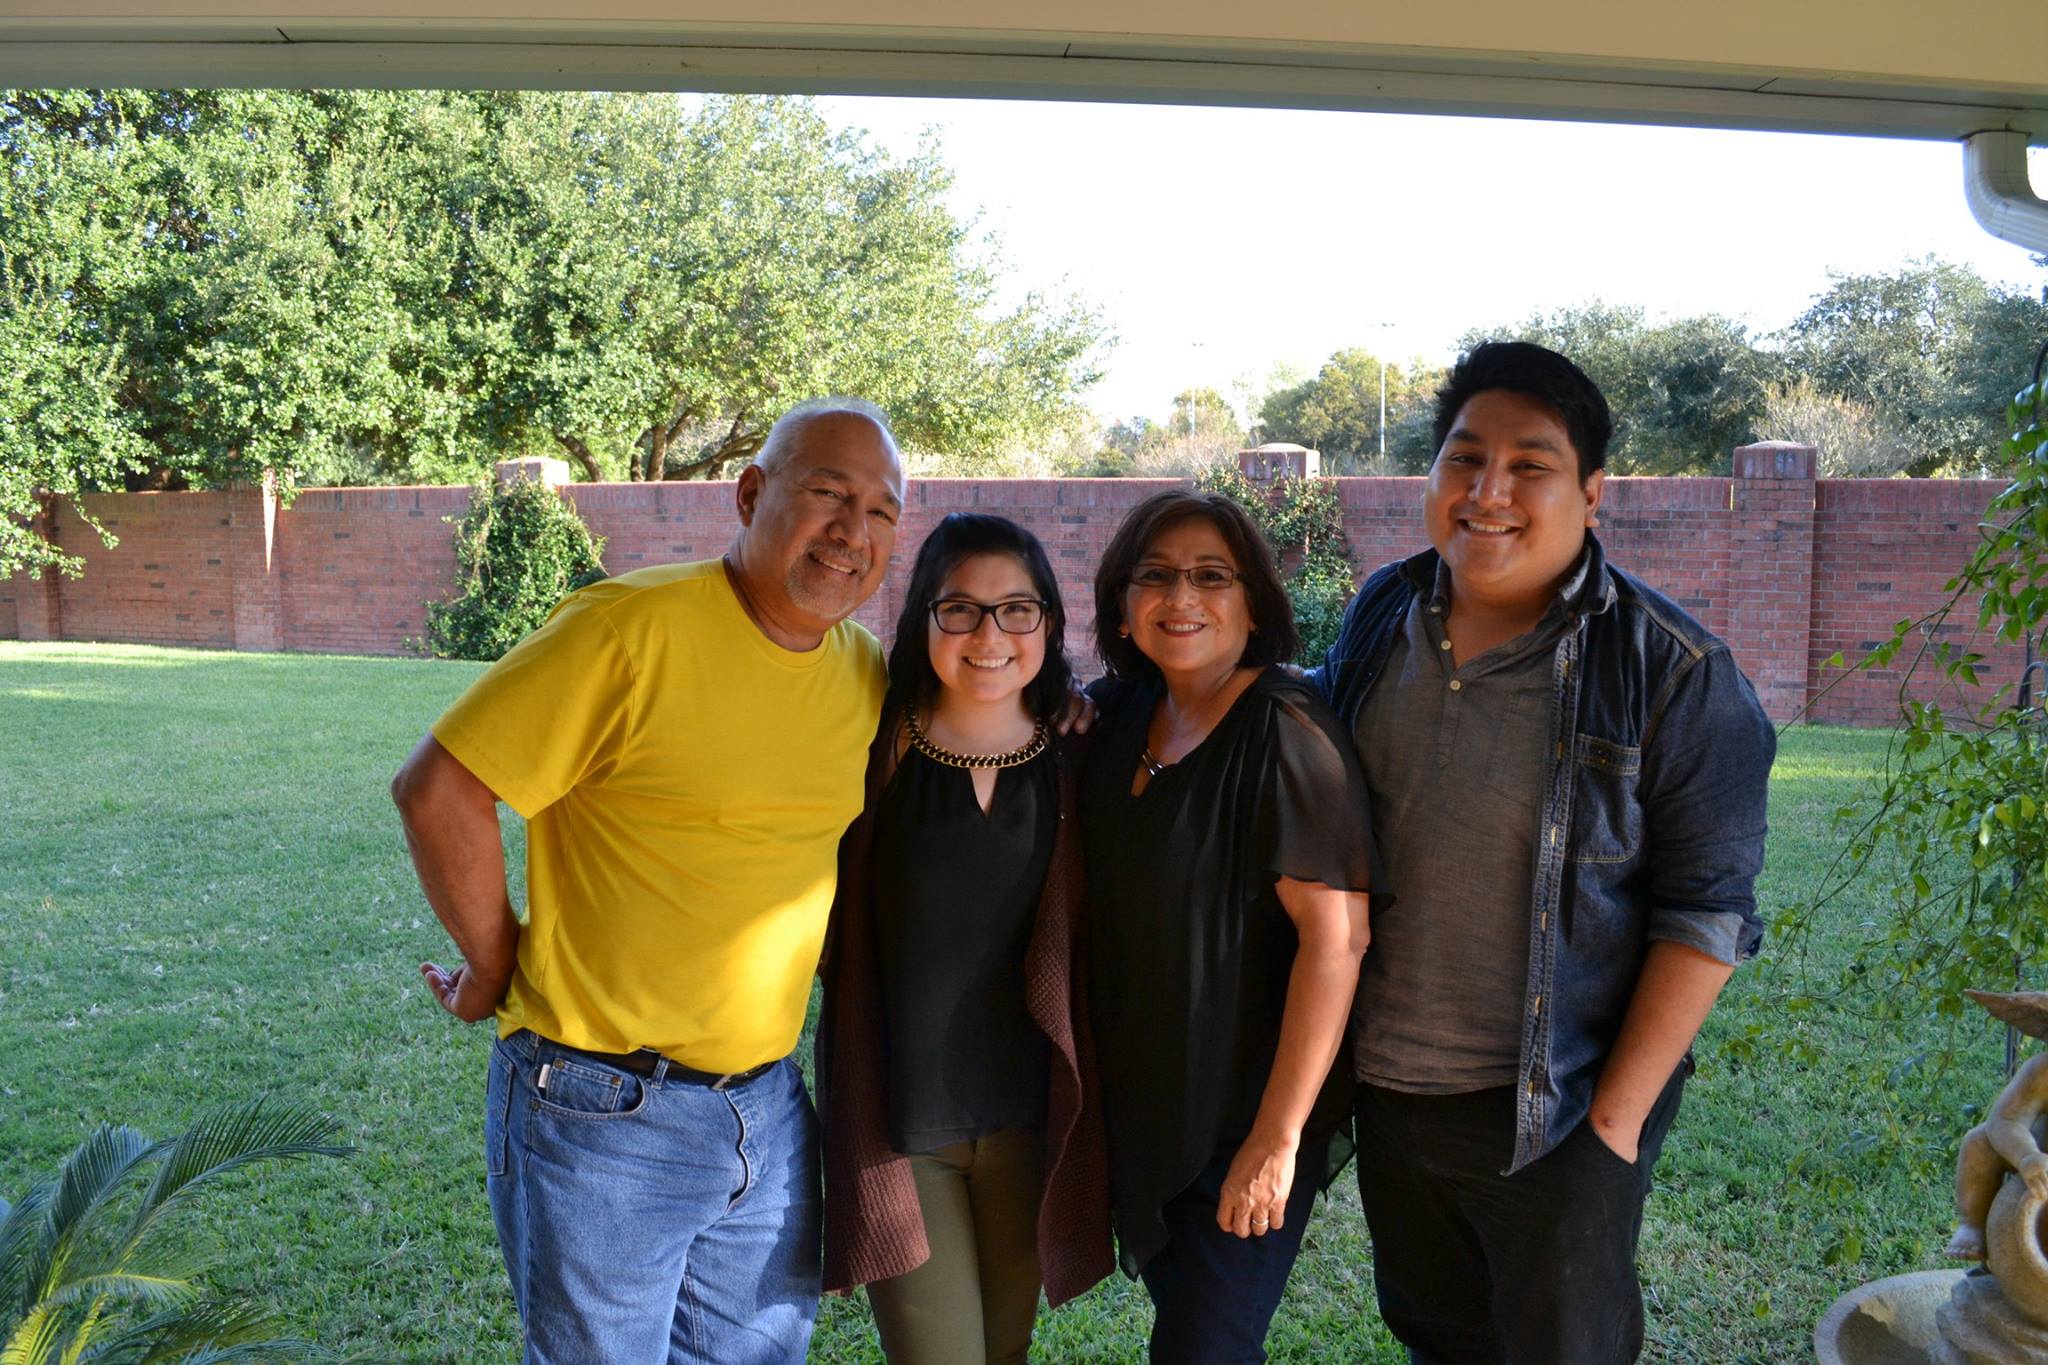 LBJ student Estevan Delgado with his family